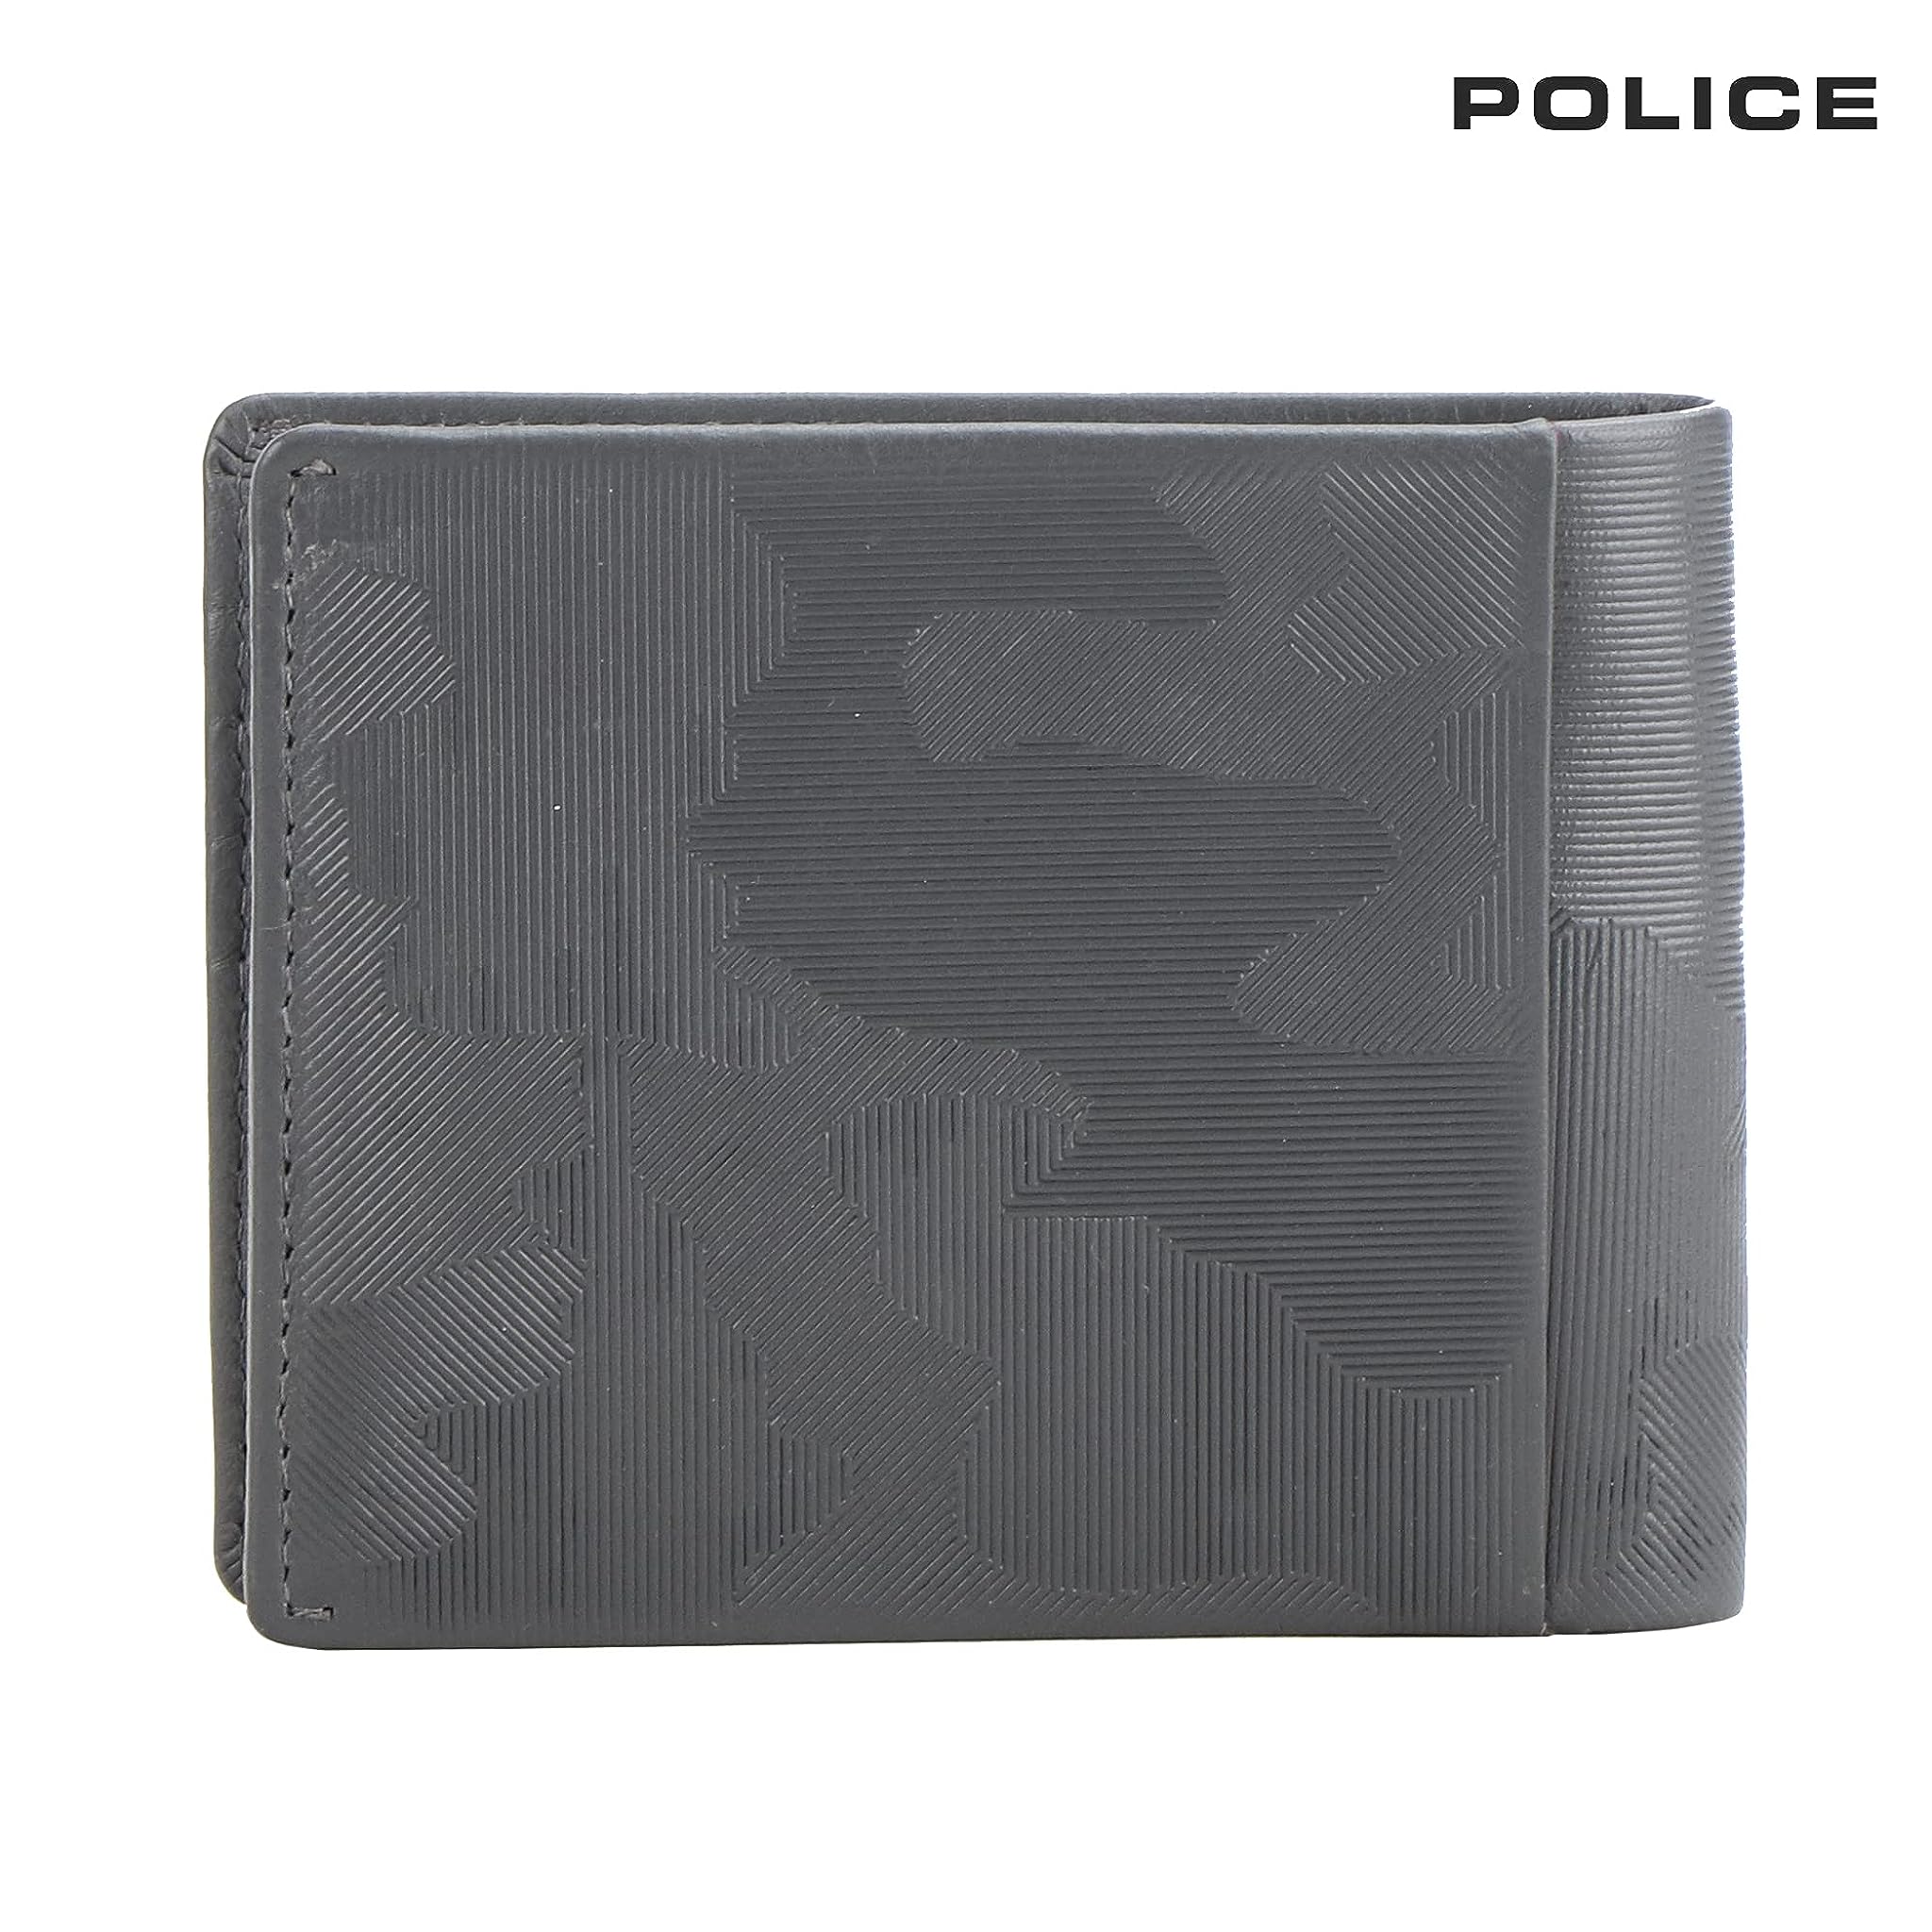 Police Gift Set Of Wallet+ Credit Card Case